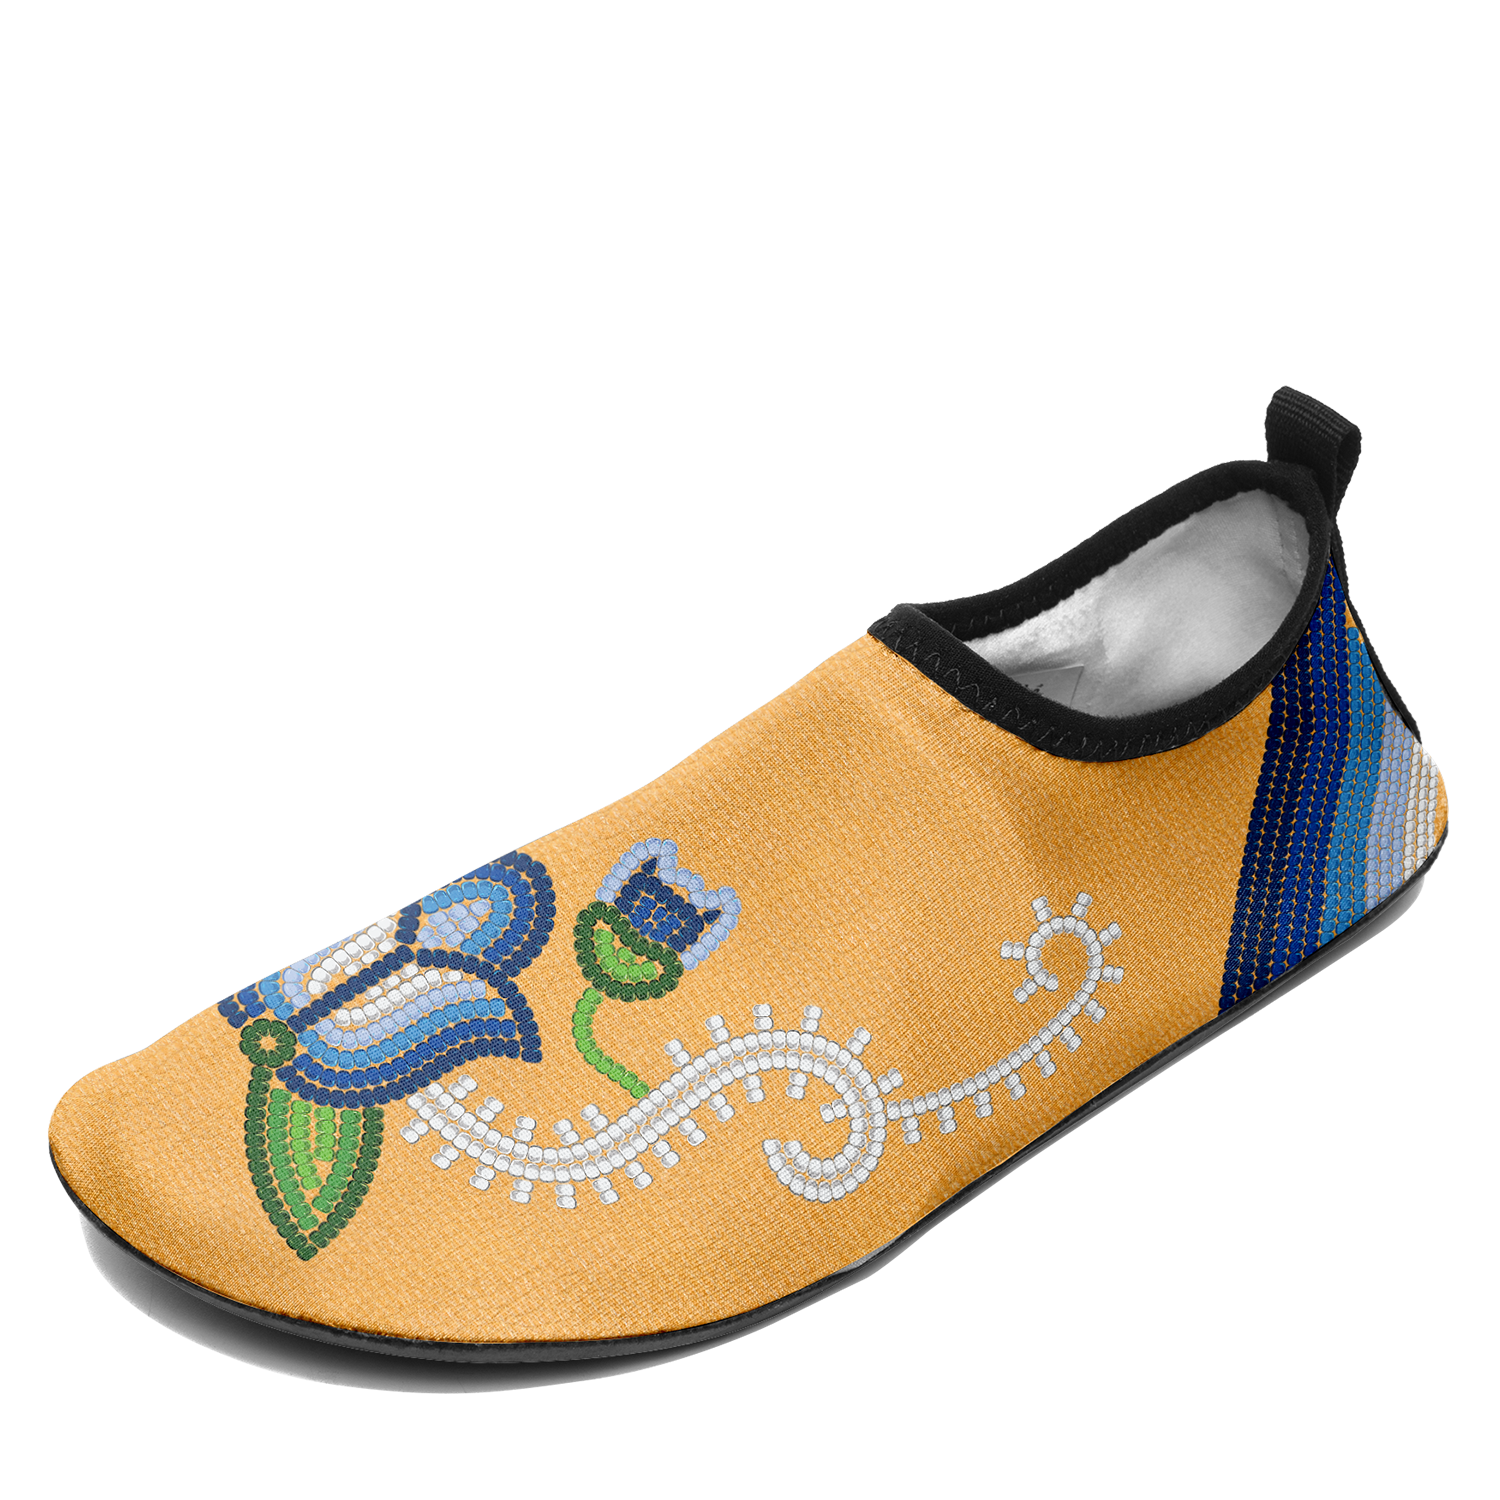 Radiant Rain 3 Kid's Sockamoccs Slip On Shoes